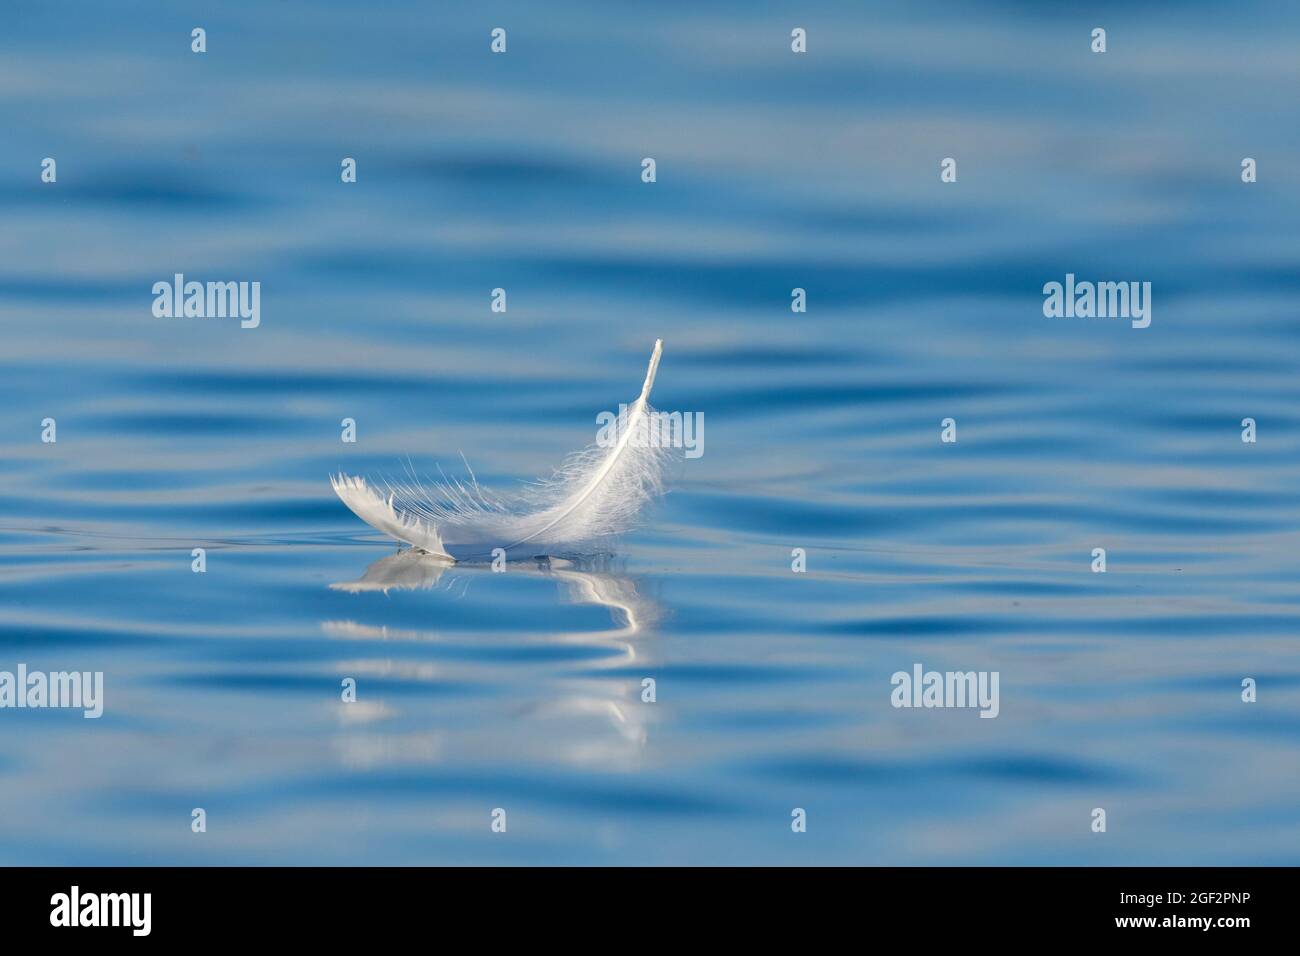 Mute cisne (Cygnus olor), nadando la pluma de cisne en el agua azul, Suiza, Thurgau Foto de stock